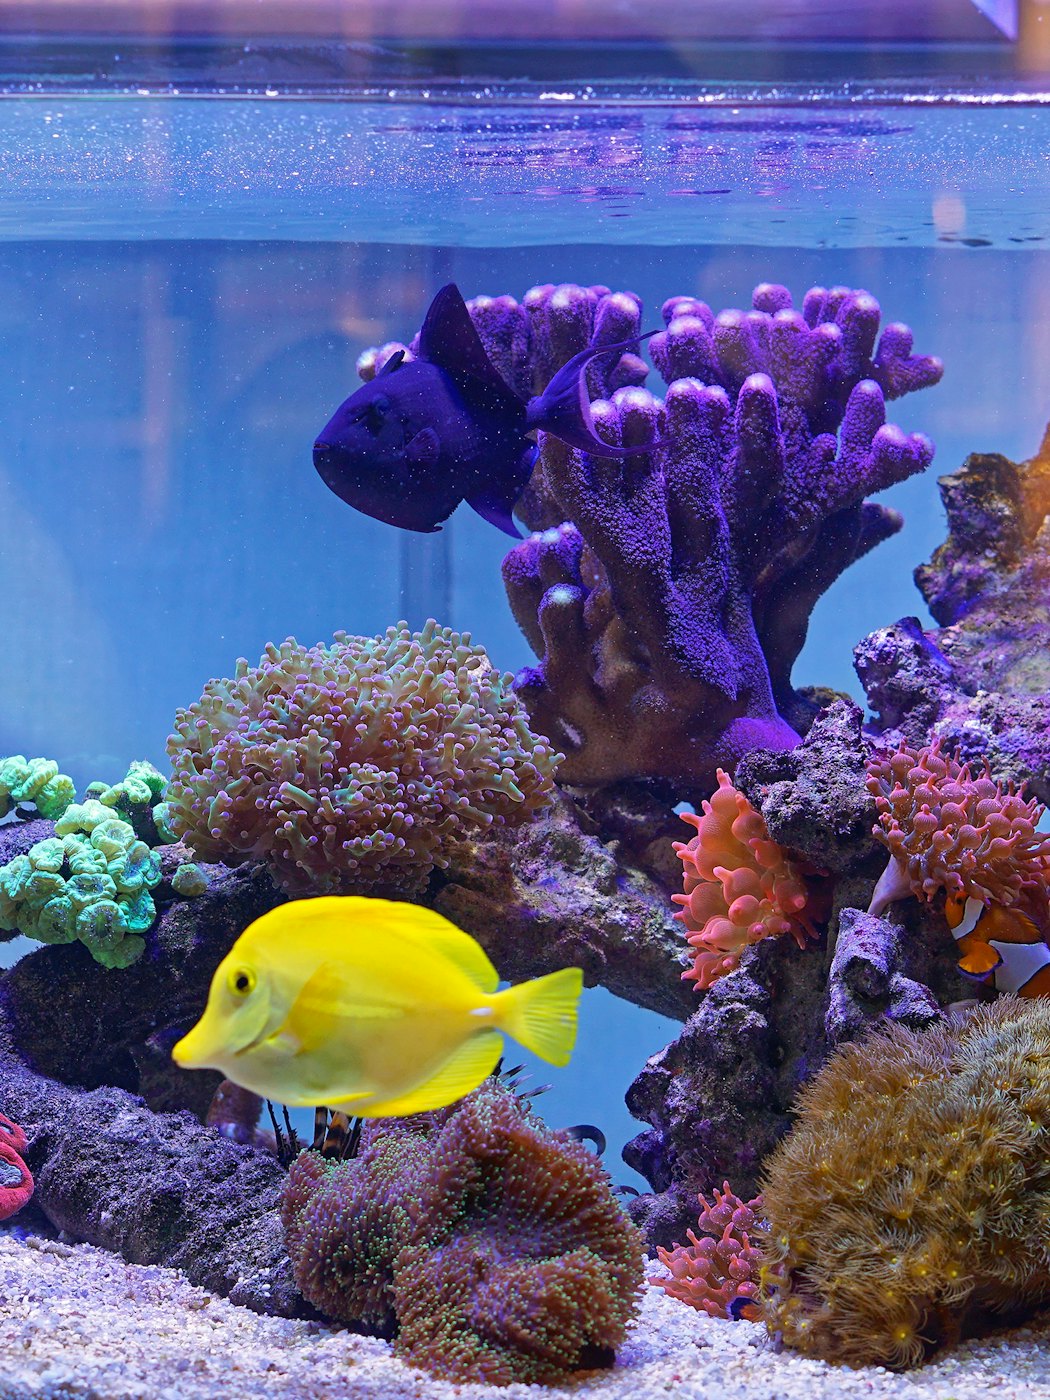 yellowtangpetfishincoralaquarium